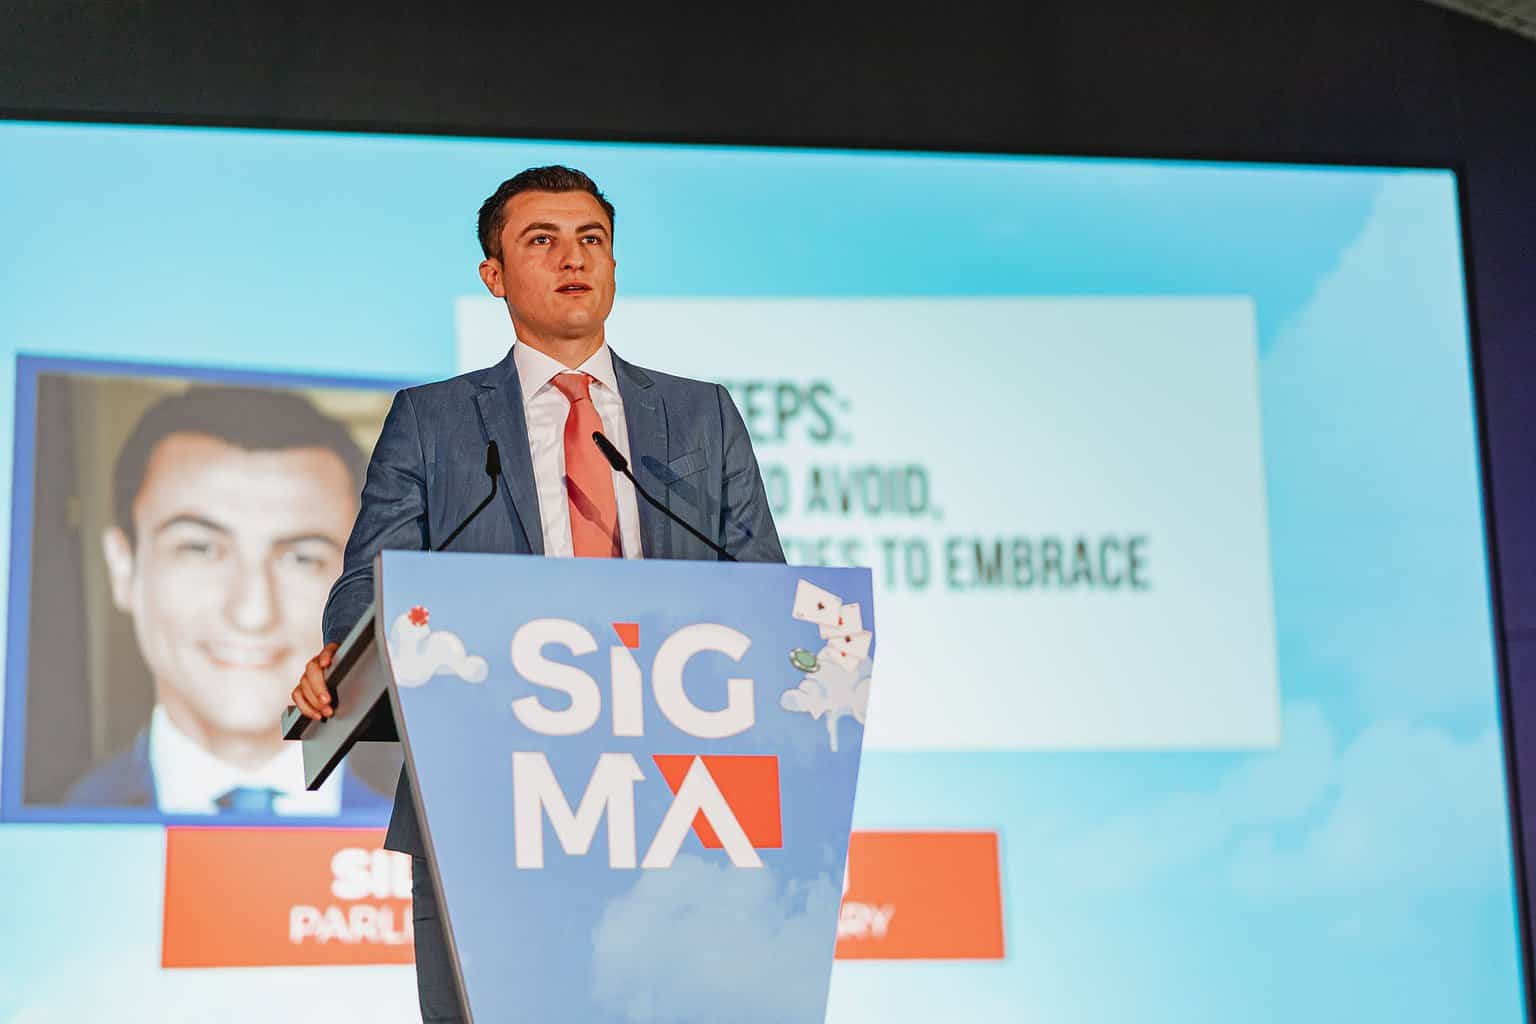 Conferência SiGMA iGAMING 2019 Malta- silvio schembri - Ministro da Economia, Investimento e Pequenas Empresas